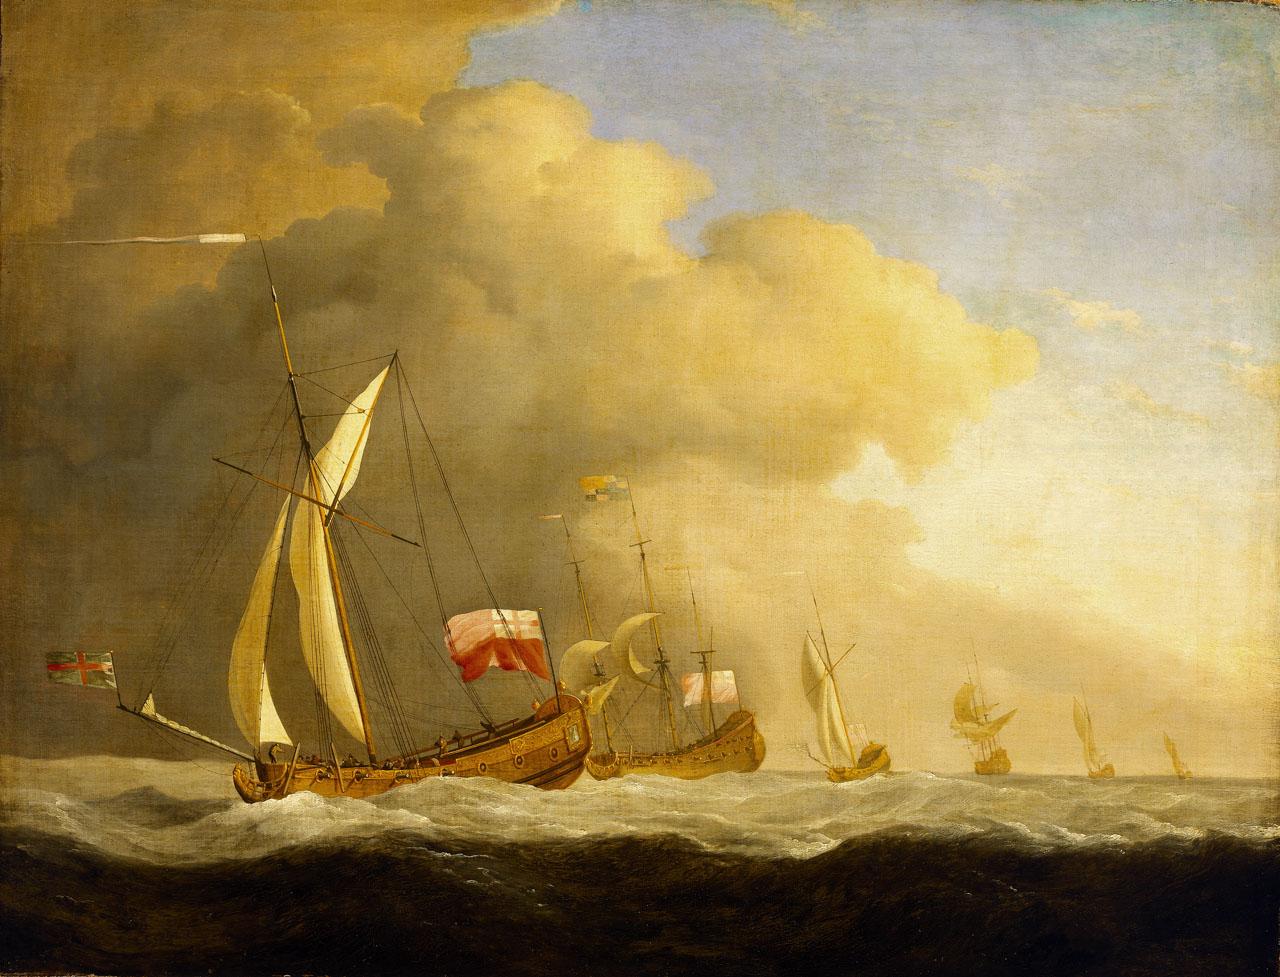 Painting of ships at sea